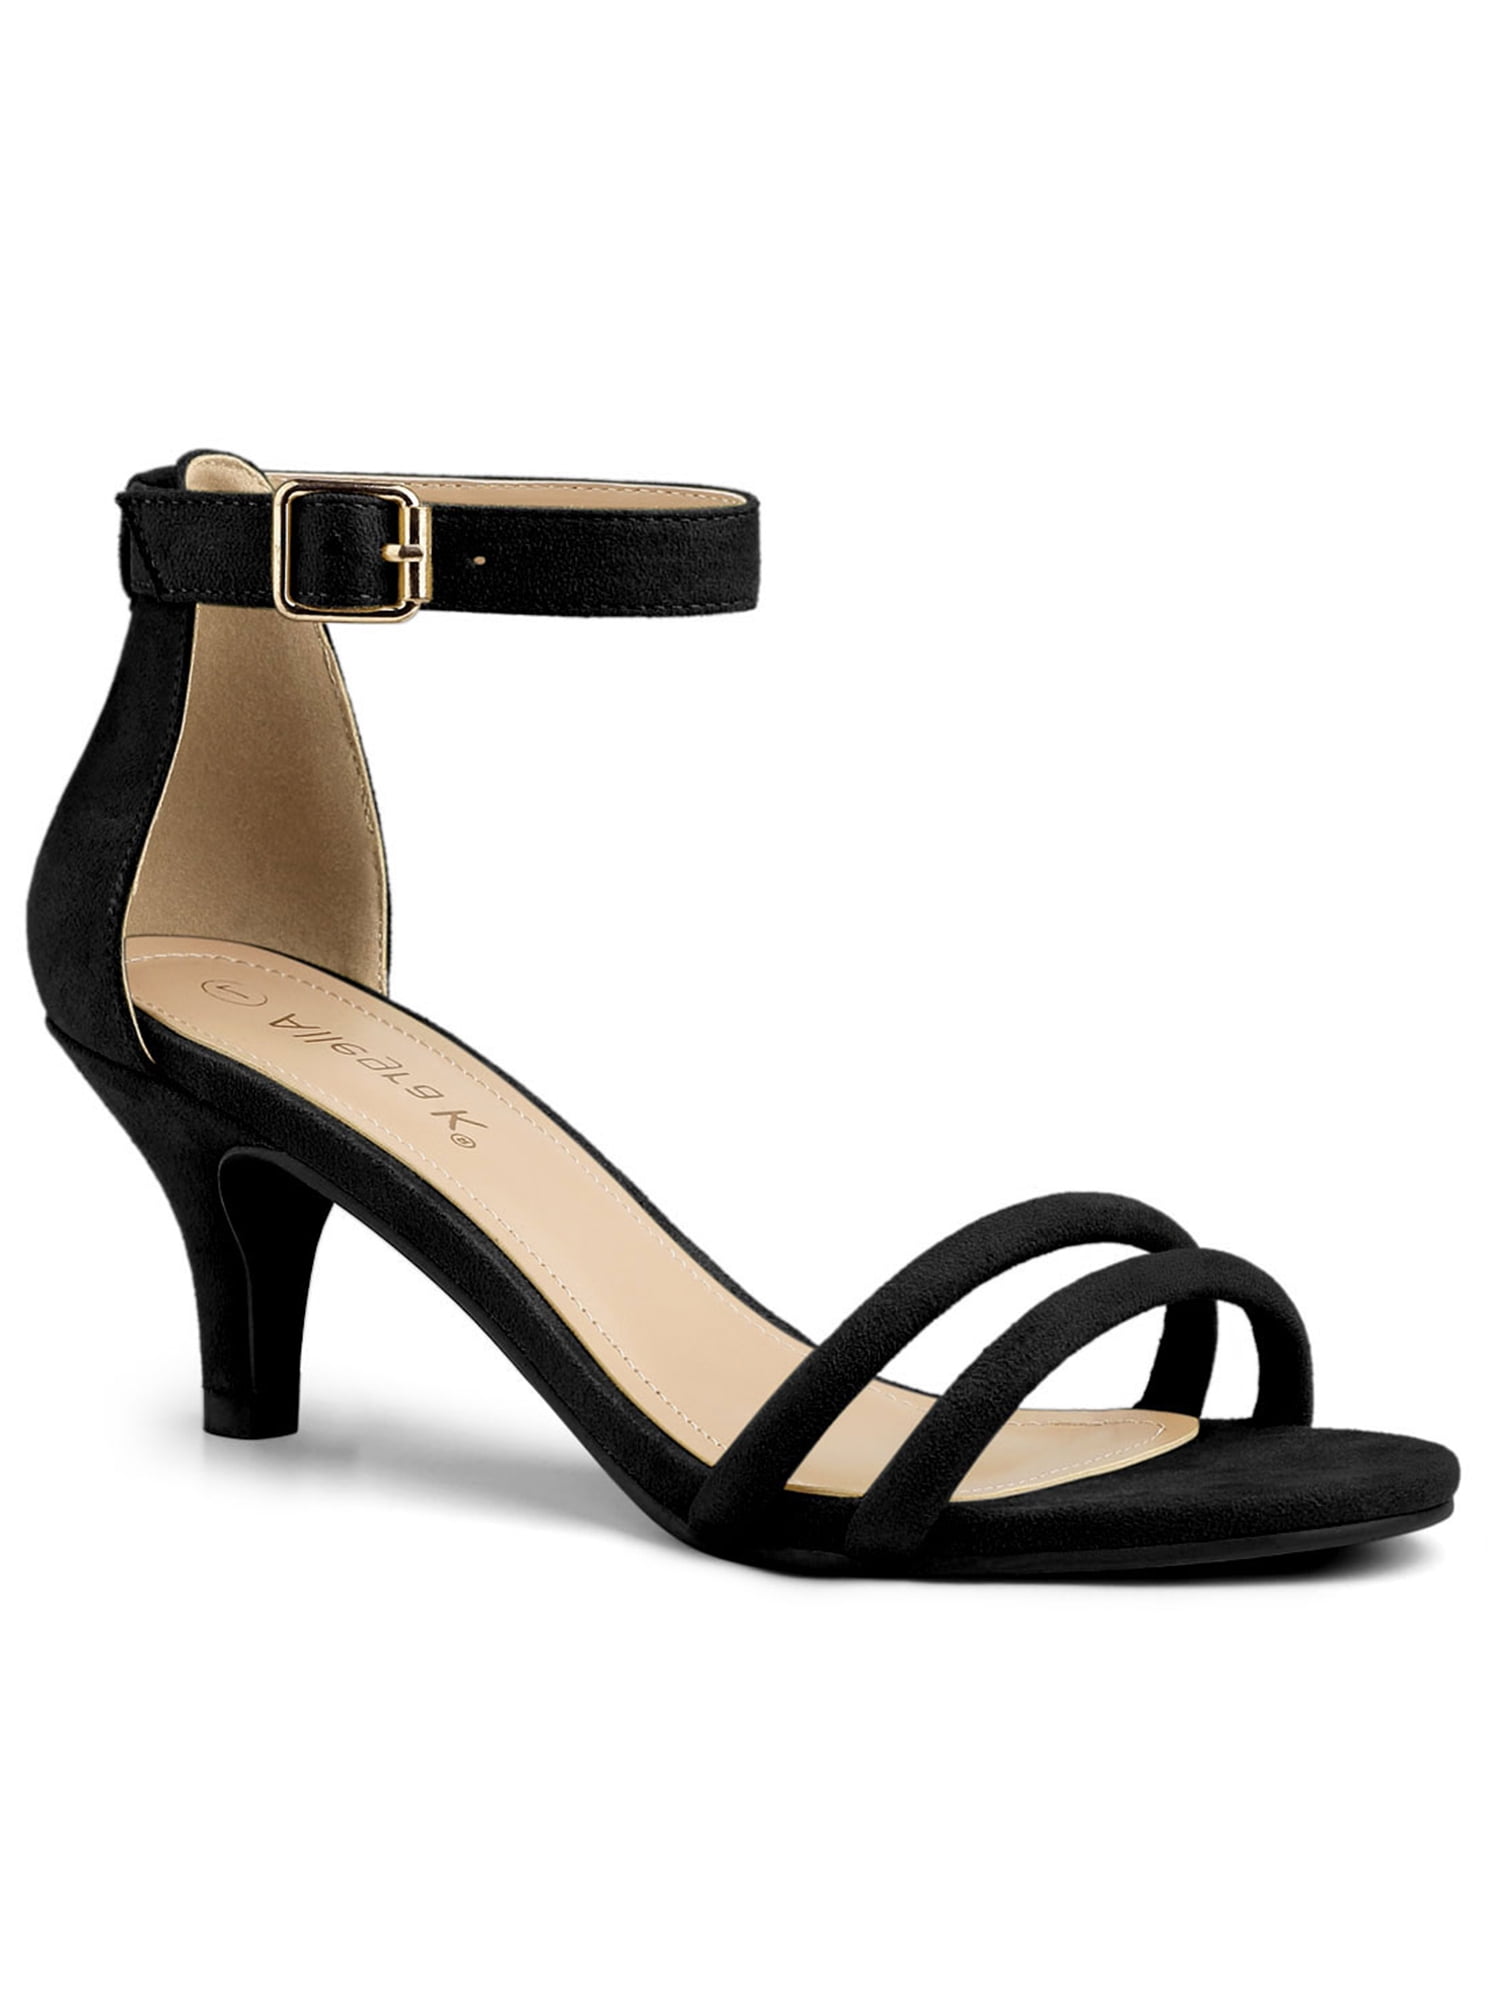 low black sandal heels